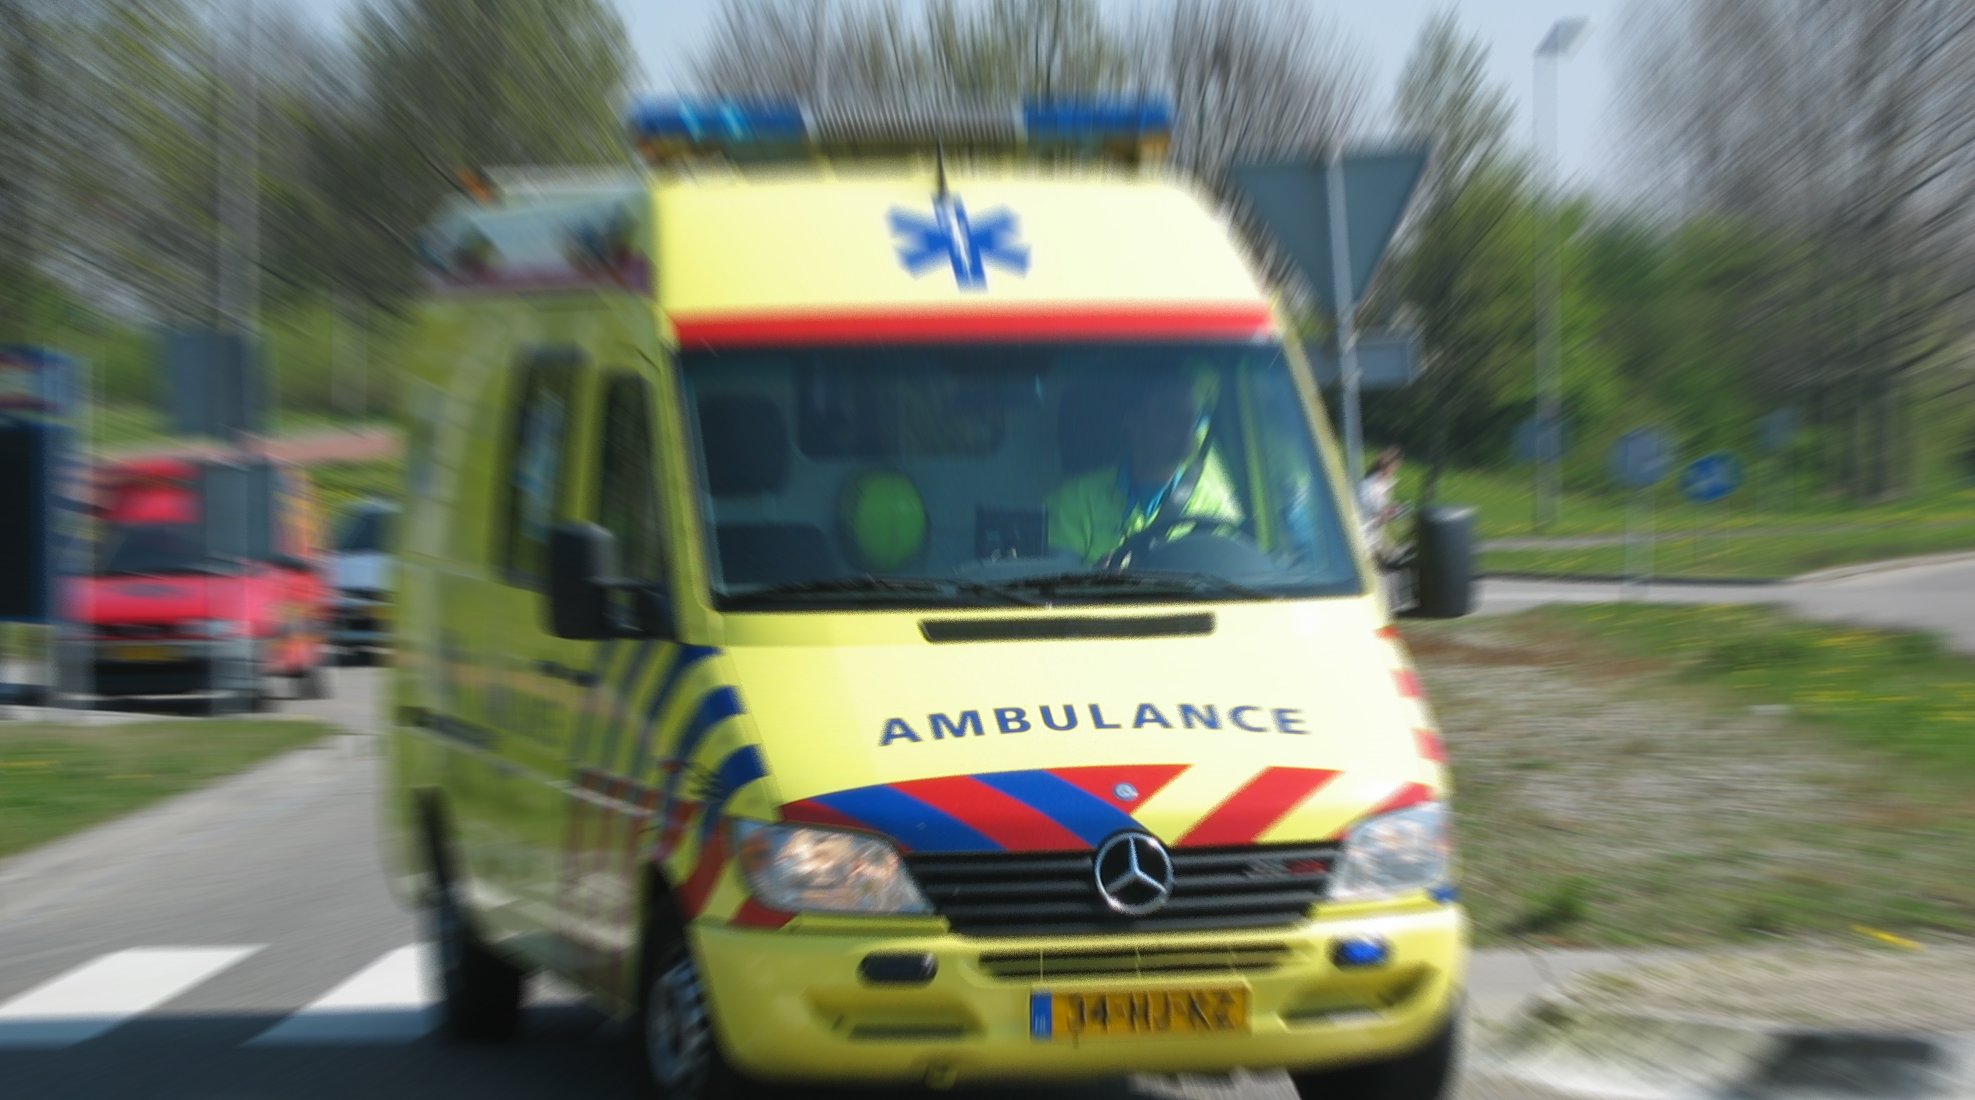 dictator logboek opleiding Sirenerader waarschuwt voor naderende ambulance - VerkeersNet